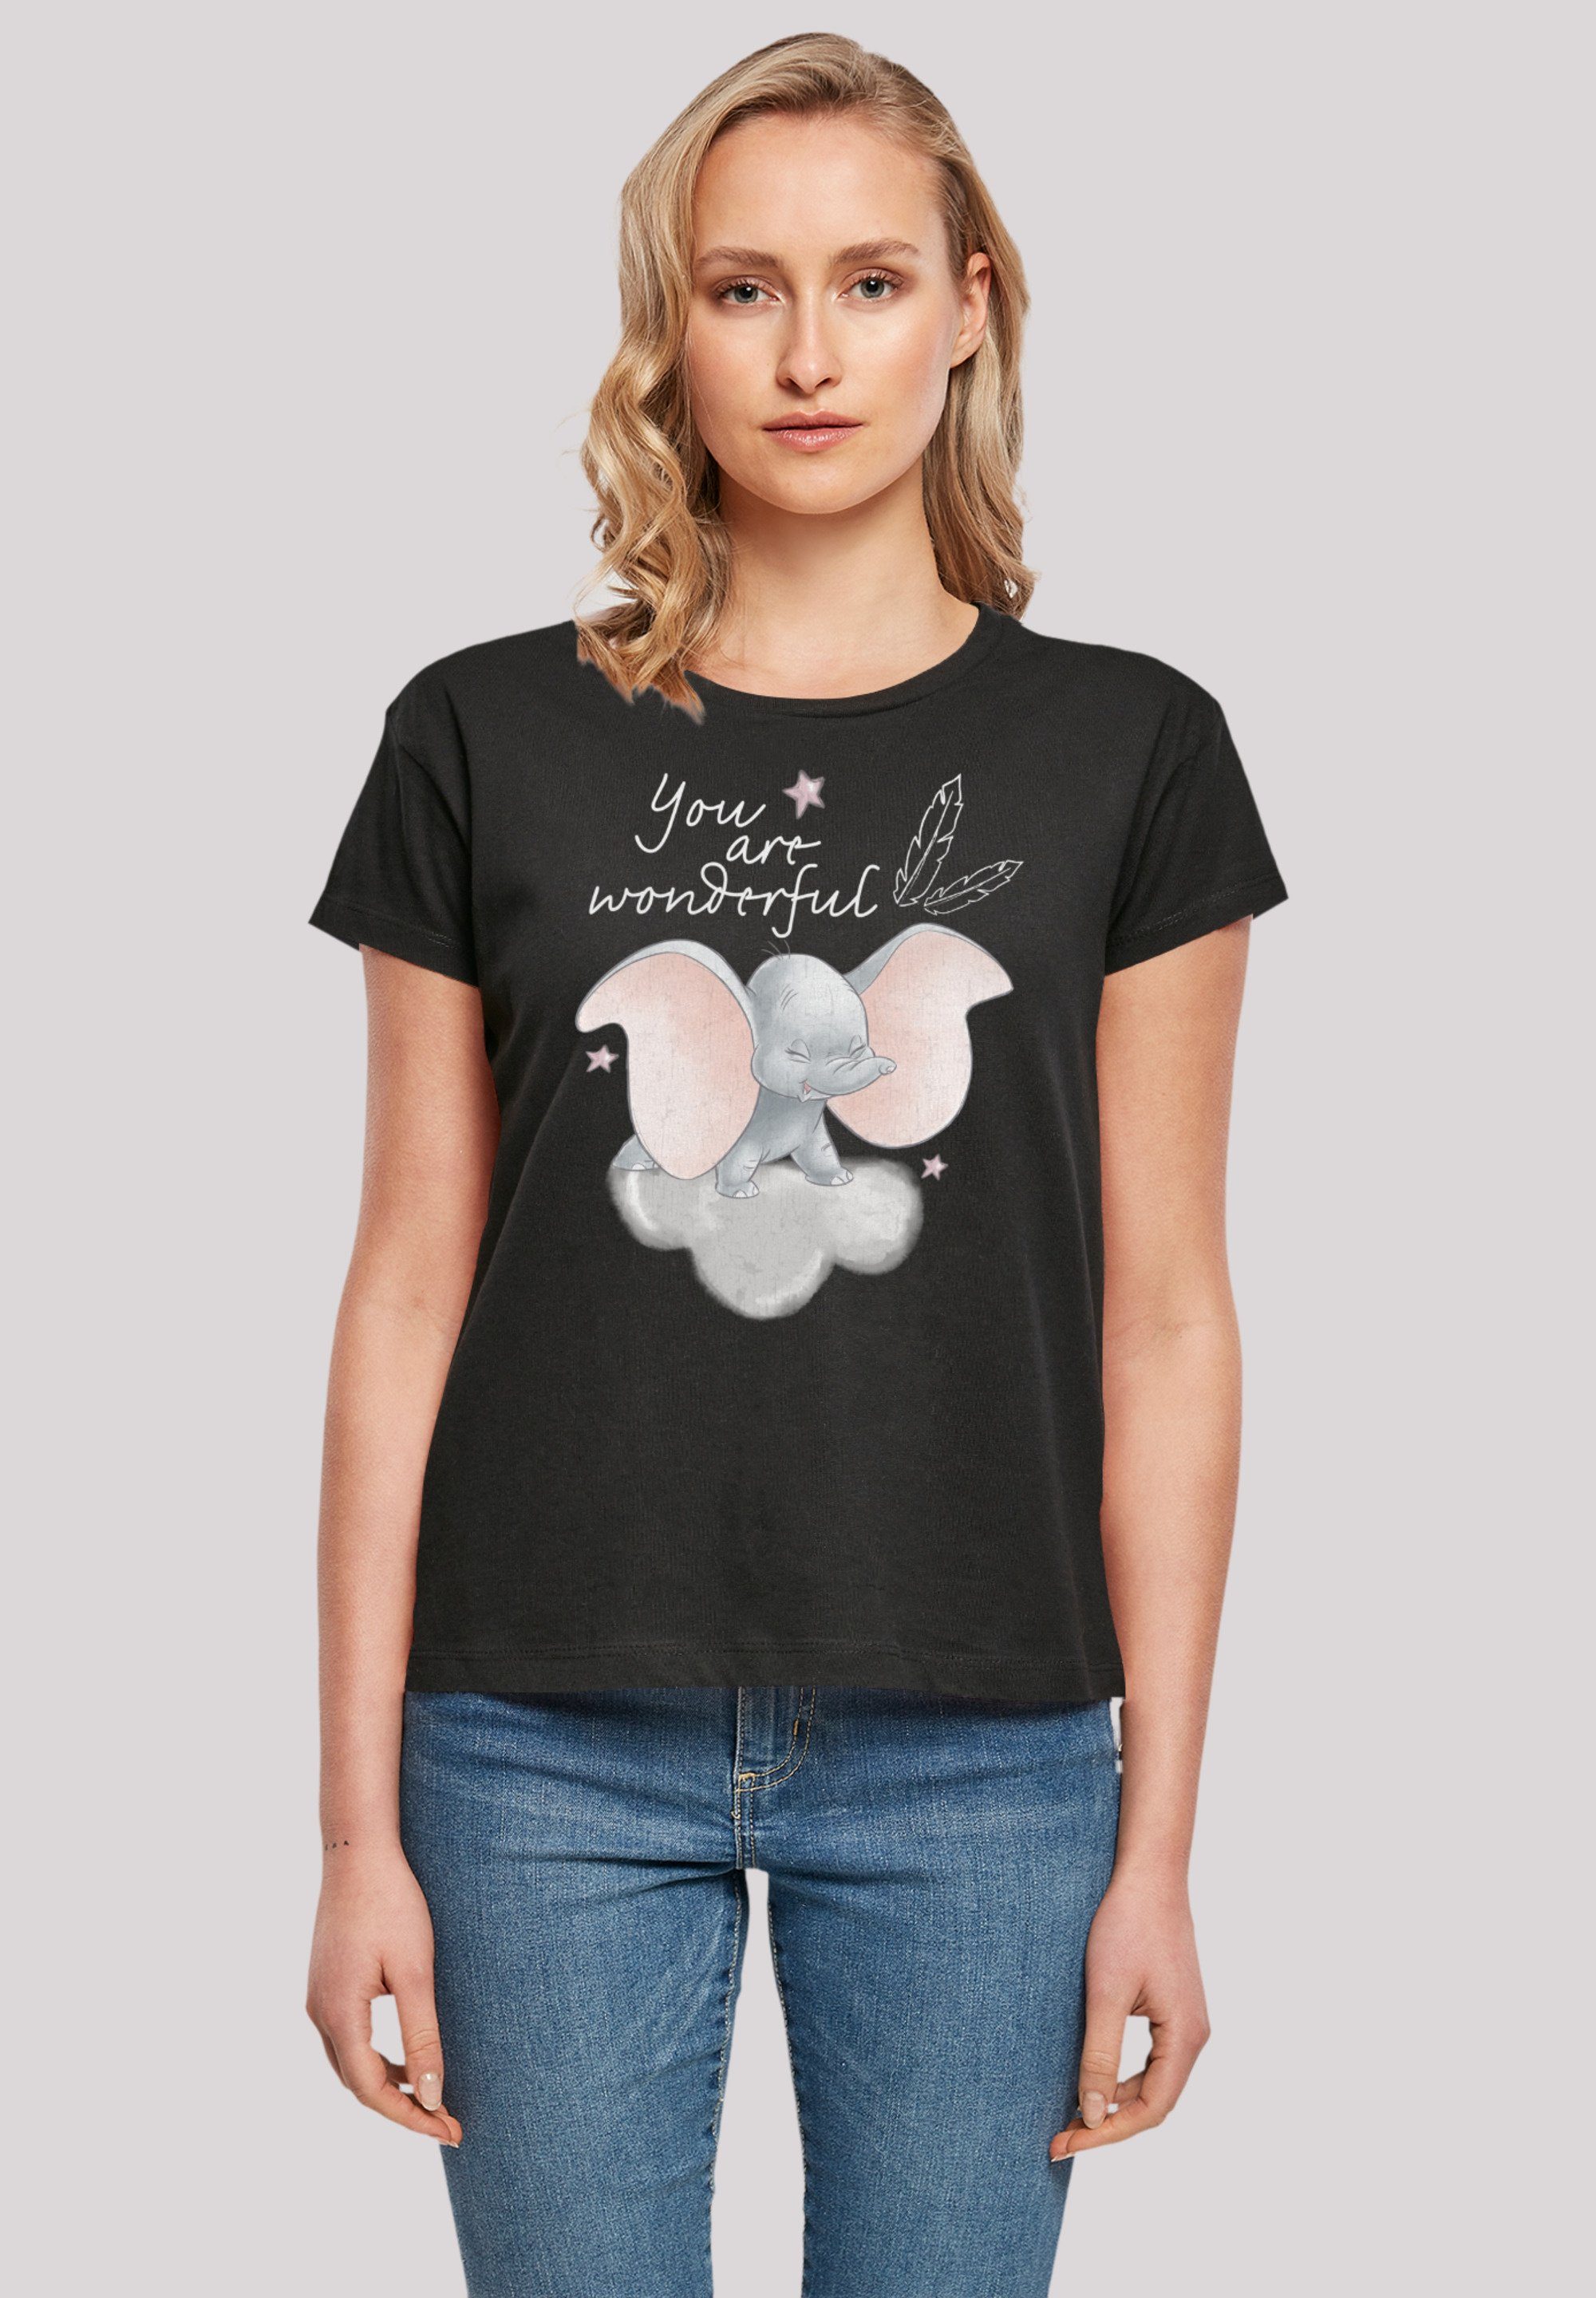 F4NT4STIC Qualität, Are und Passform Verarbeitung Wonderful Disney Premium Dumbo T-Shirt hochwertige You Perfekte